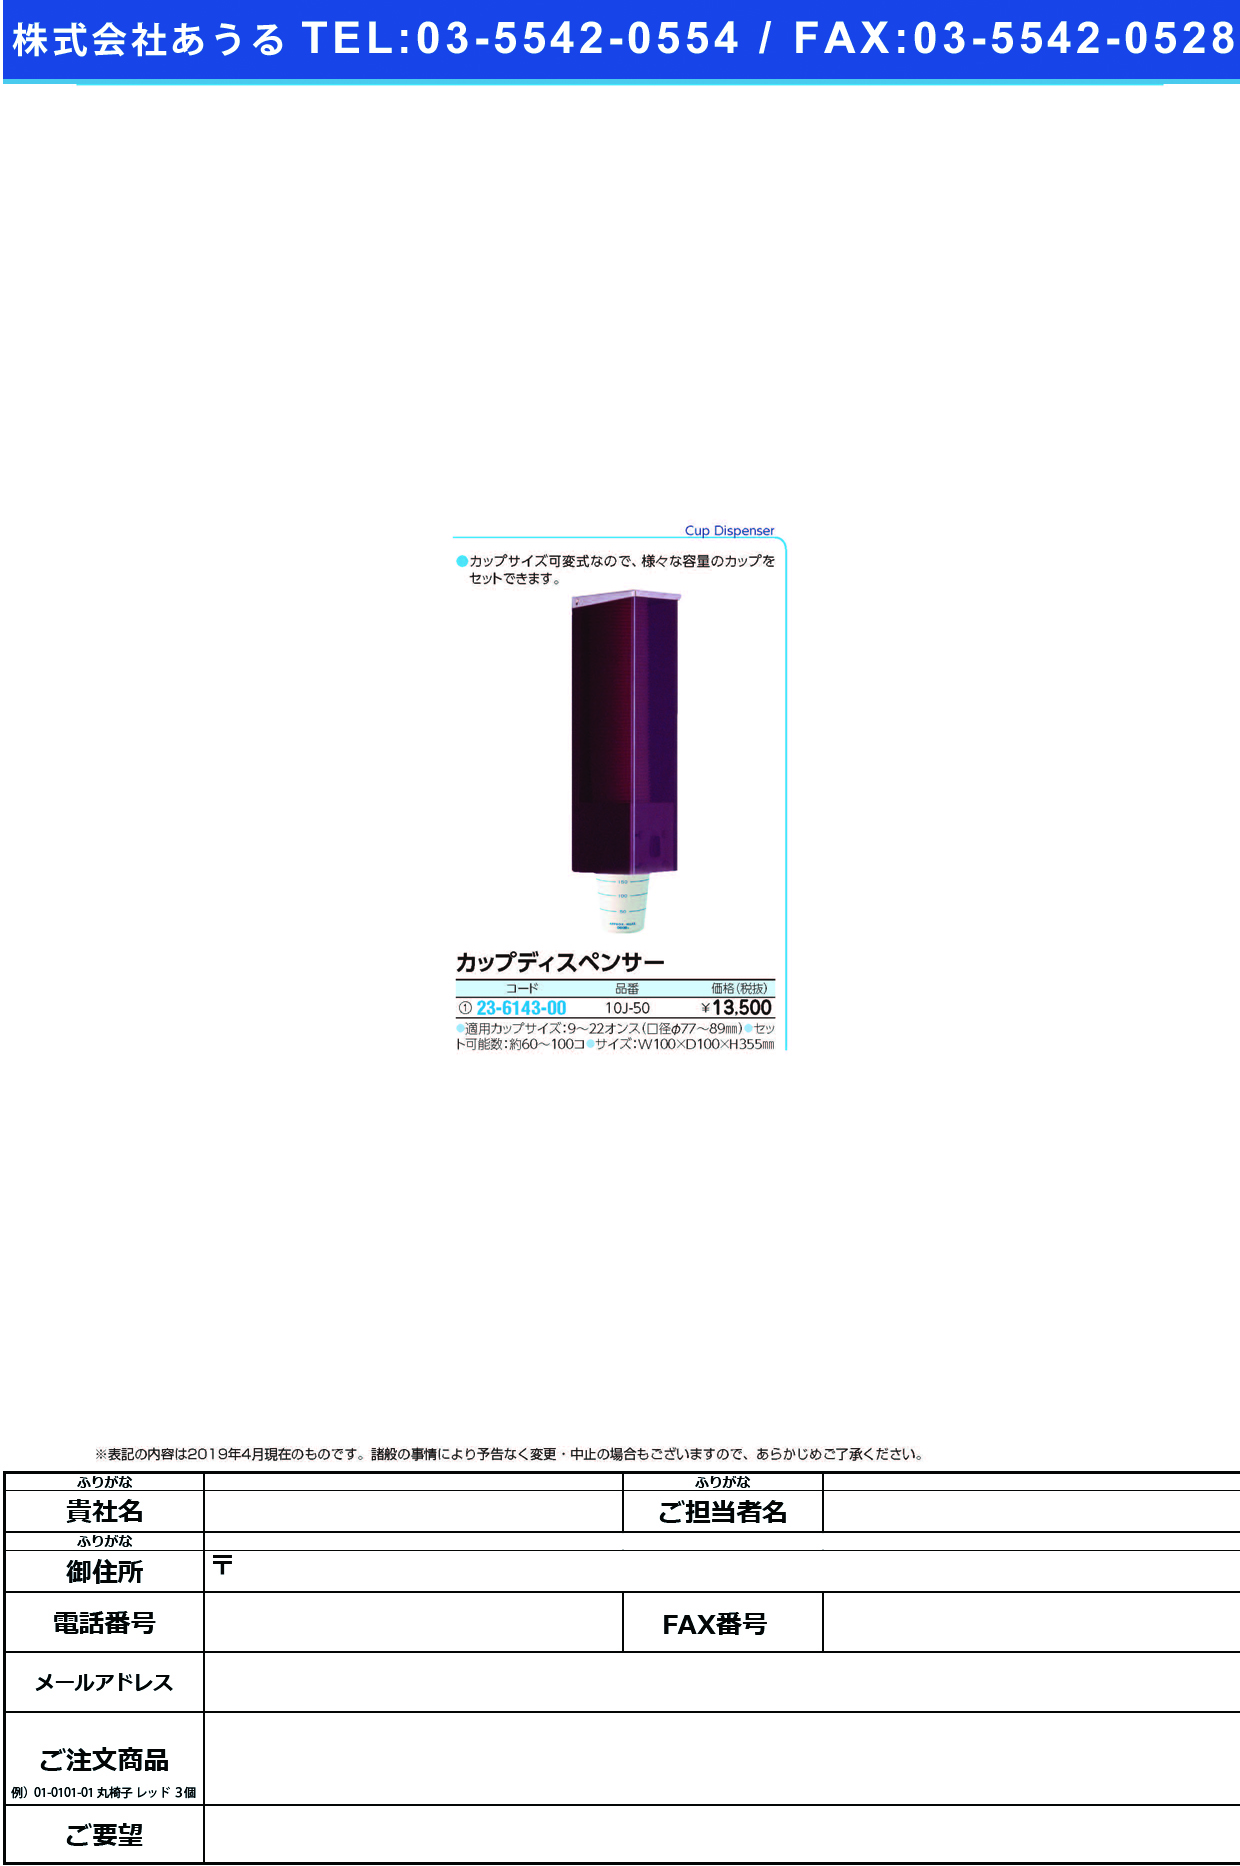 (23-6143-00)カップディスペンサー 10J-50 ｶｯﾌﾟﾃﾞｨｽﾍﾟﾝｻｰ【1台単位】【2019年カタログ商品】